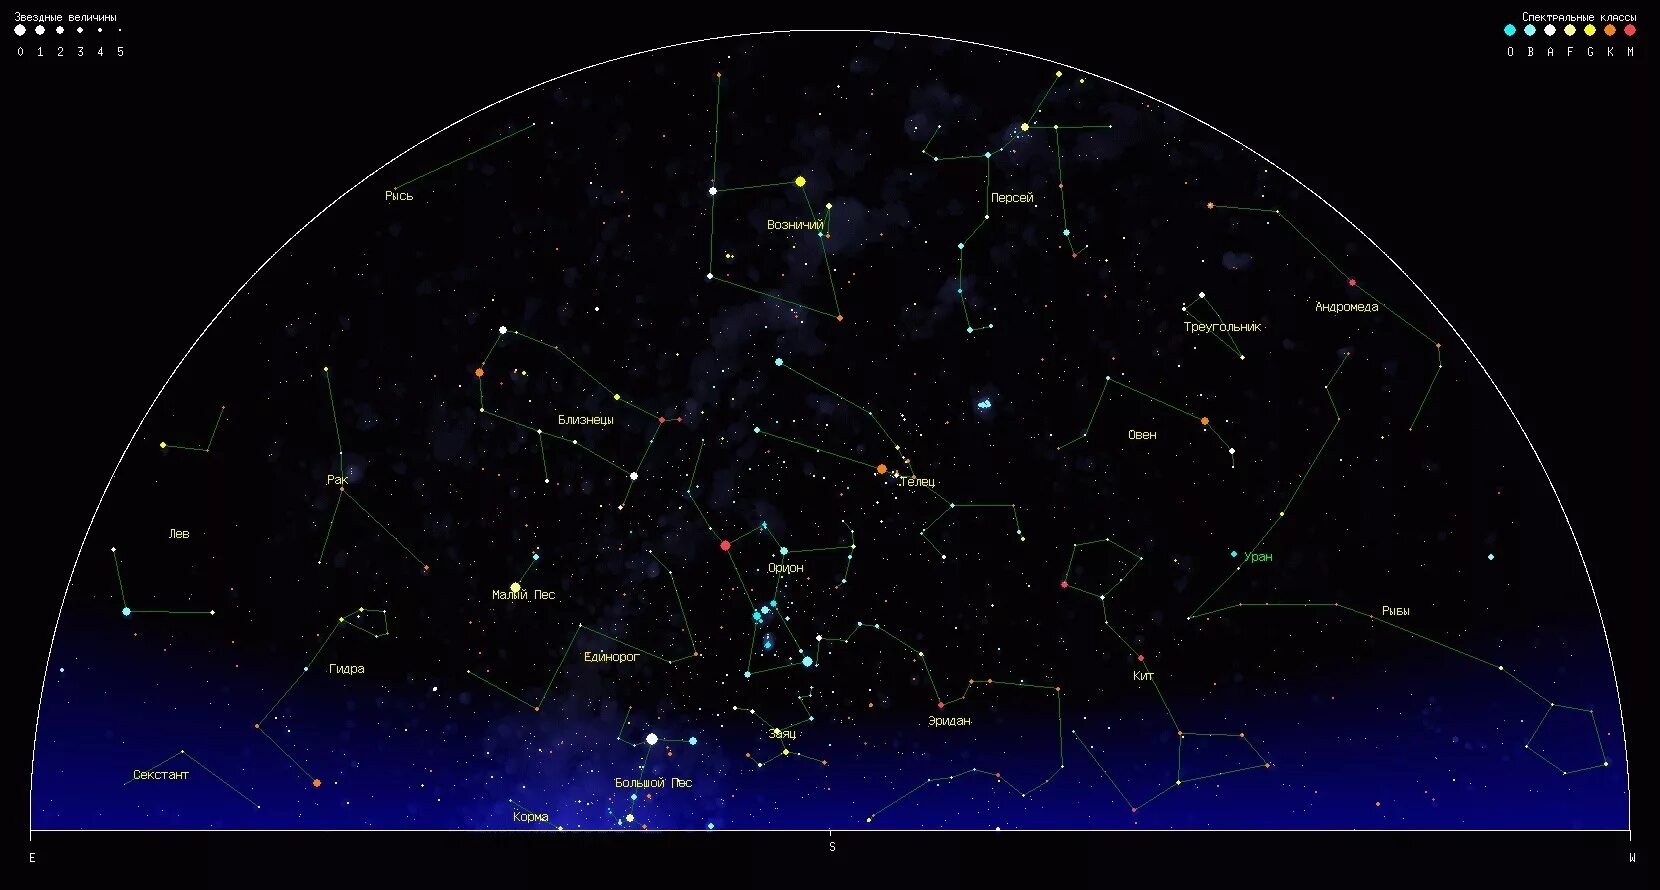 Созвездия летнего неба Северного полушария. Карта звёздного неба Северное полушарие большая Медведица. Орион на карте звездного неба Северное полушарие. Видимые созвездия Северного полушария.